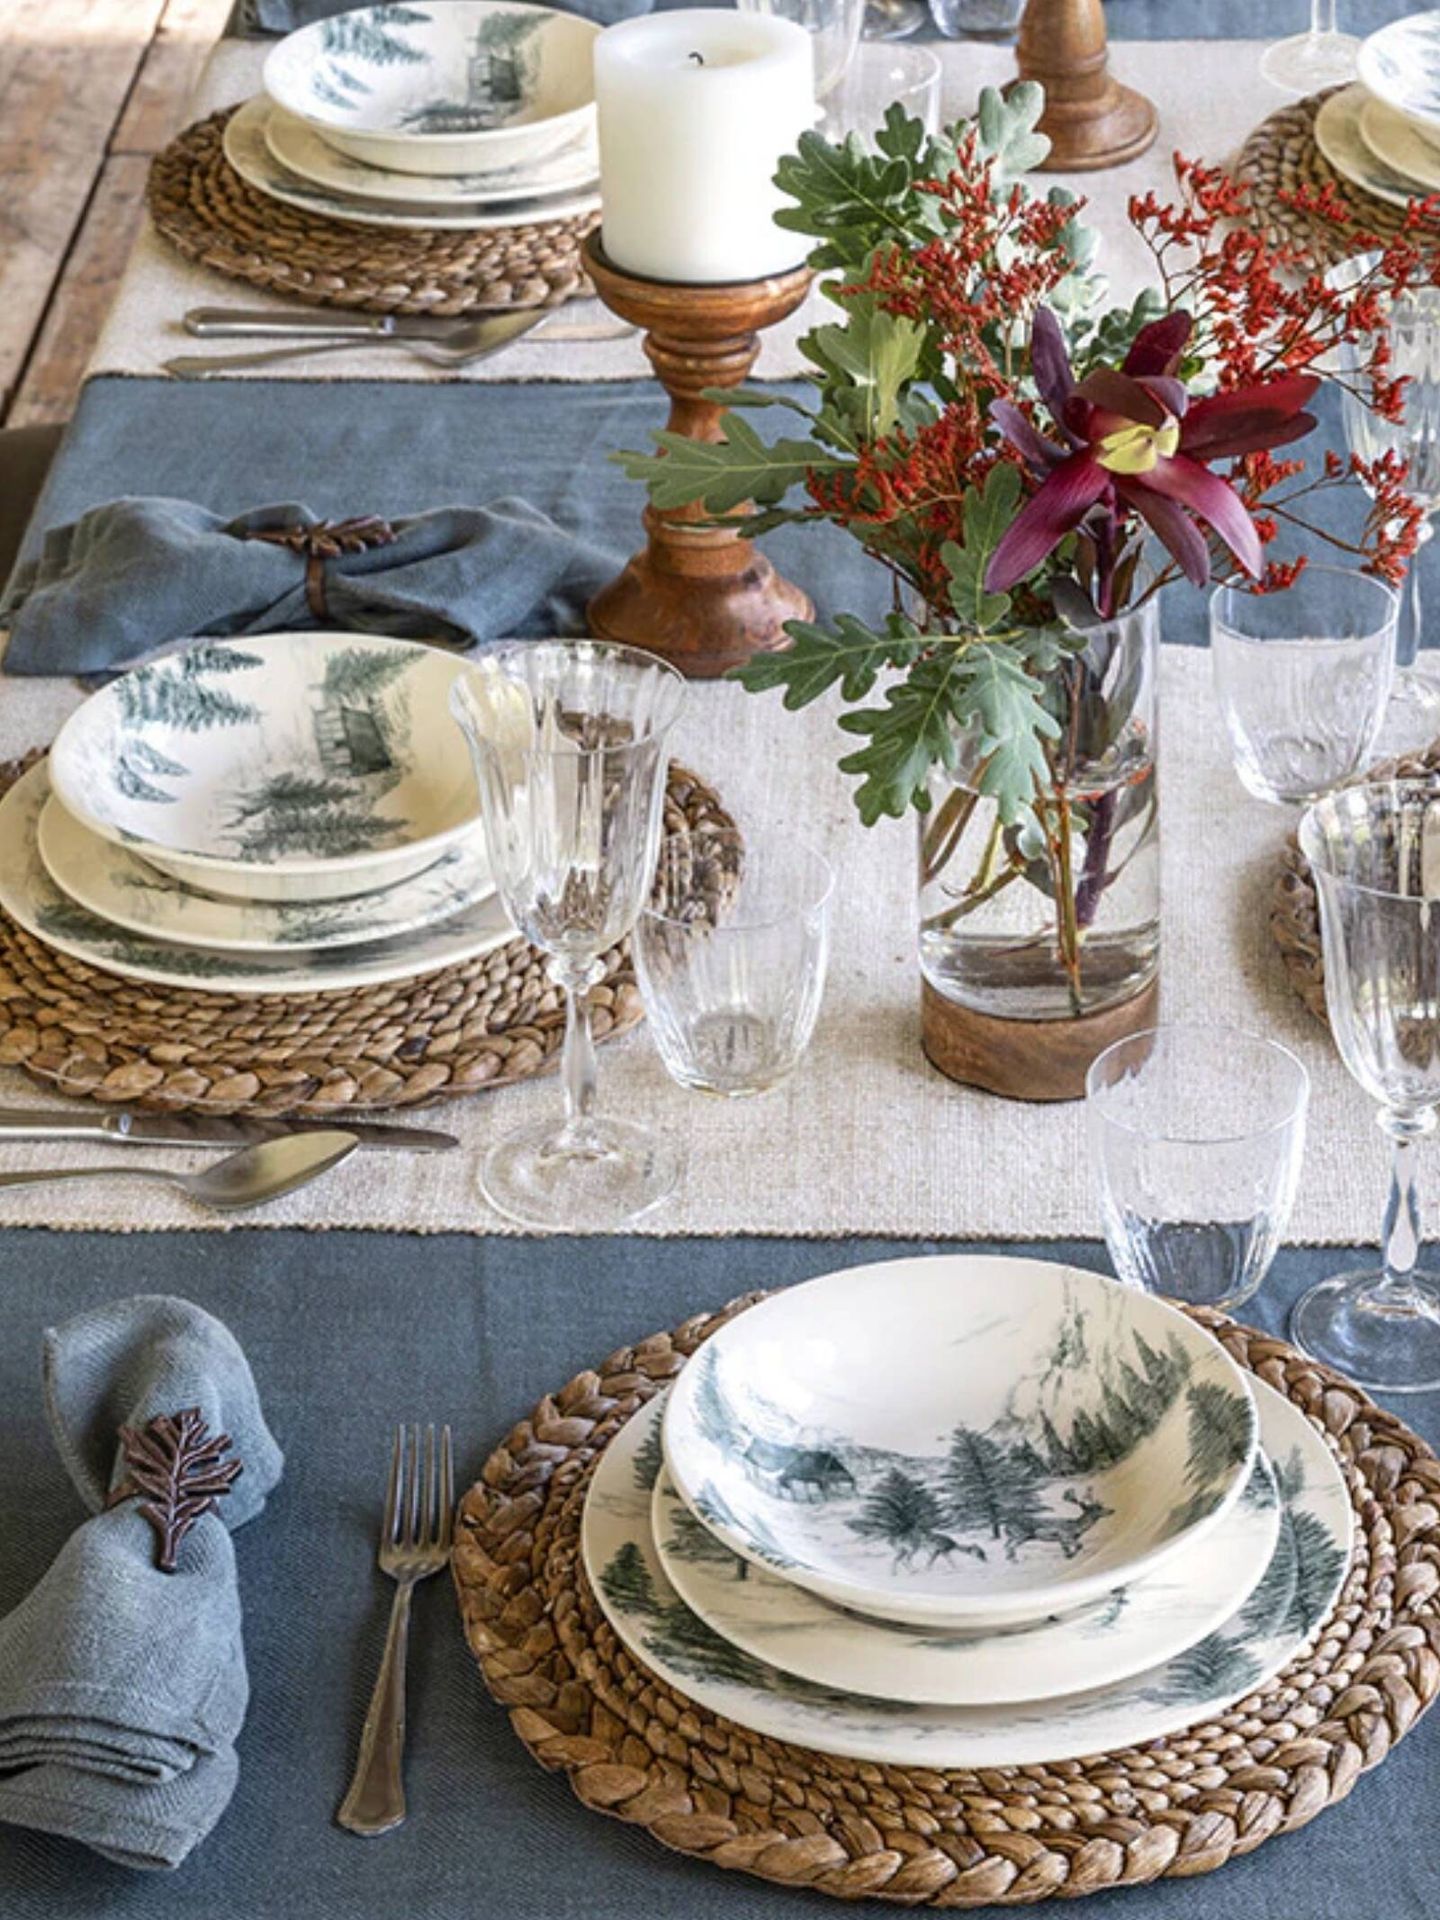 Vajillas elegantes y con estilo para decorar tu mesa. (Cortesía/El Corte Inglés)